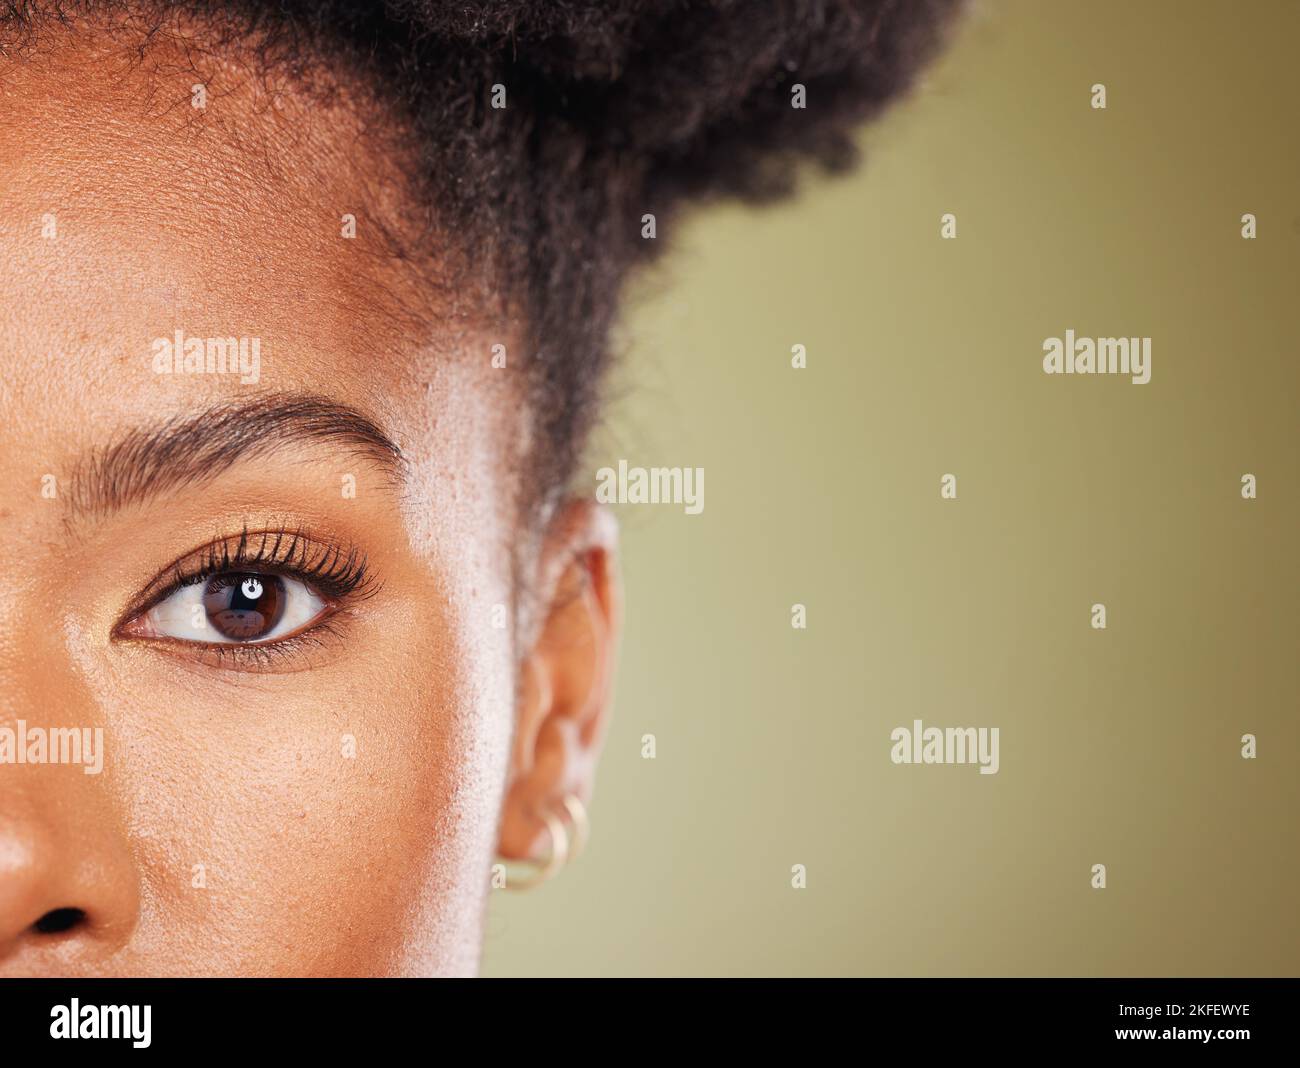 Schönheit, schwarze Frau und Halbgesichtsportrait für Dermatologie, Gesichts- oder Hautpflege-Werbung. Wellness, Gesundheit und natürliche Haut kosmetische Zoom des Modells Stockfoto